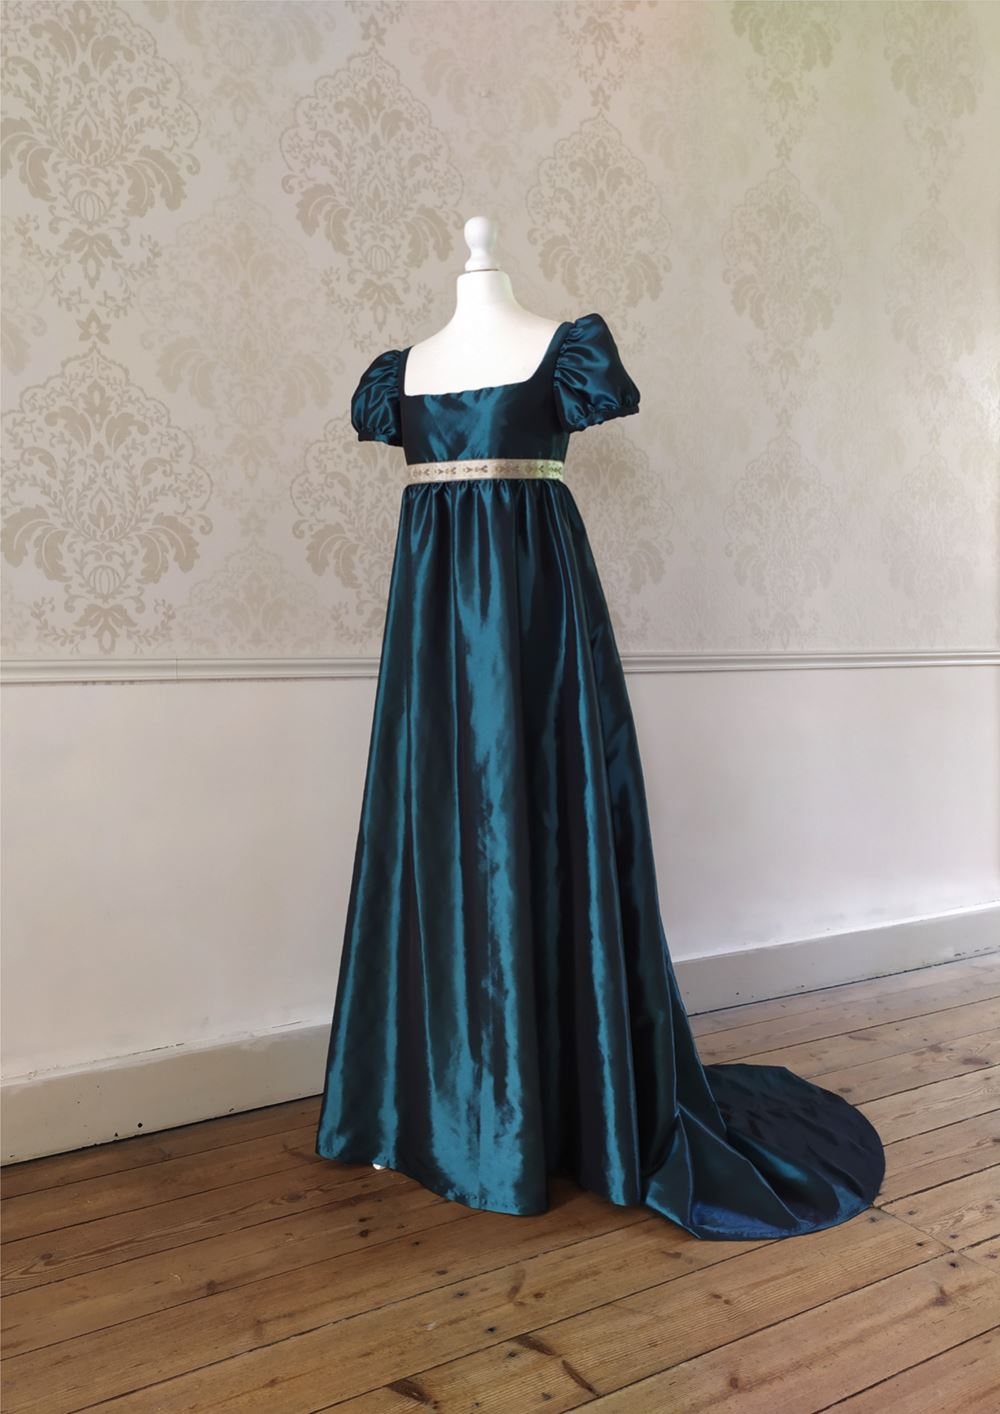 Regency ball gown in blue deep taffeta